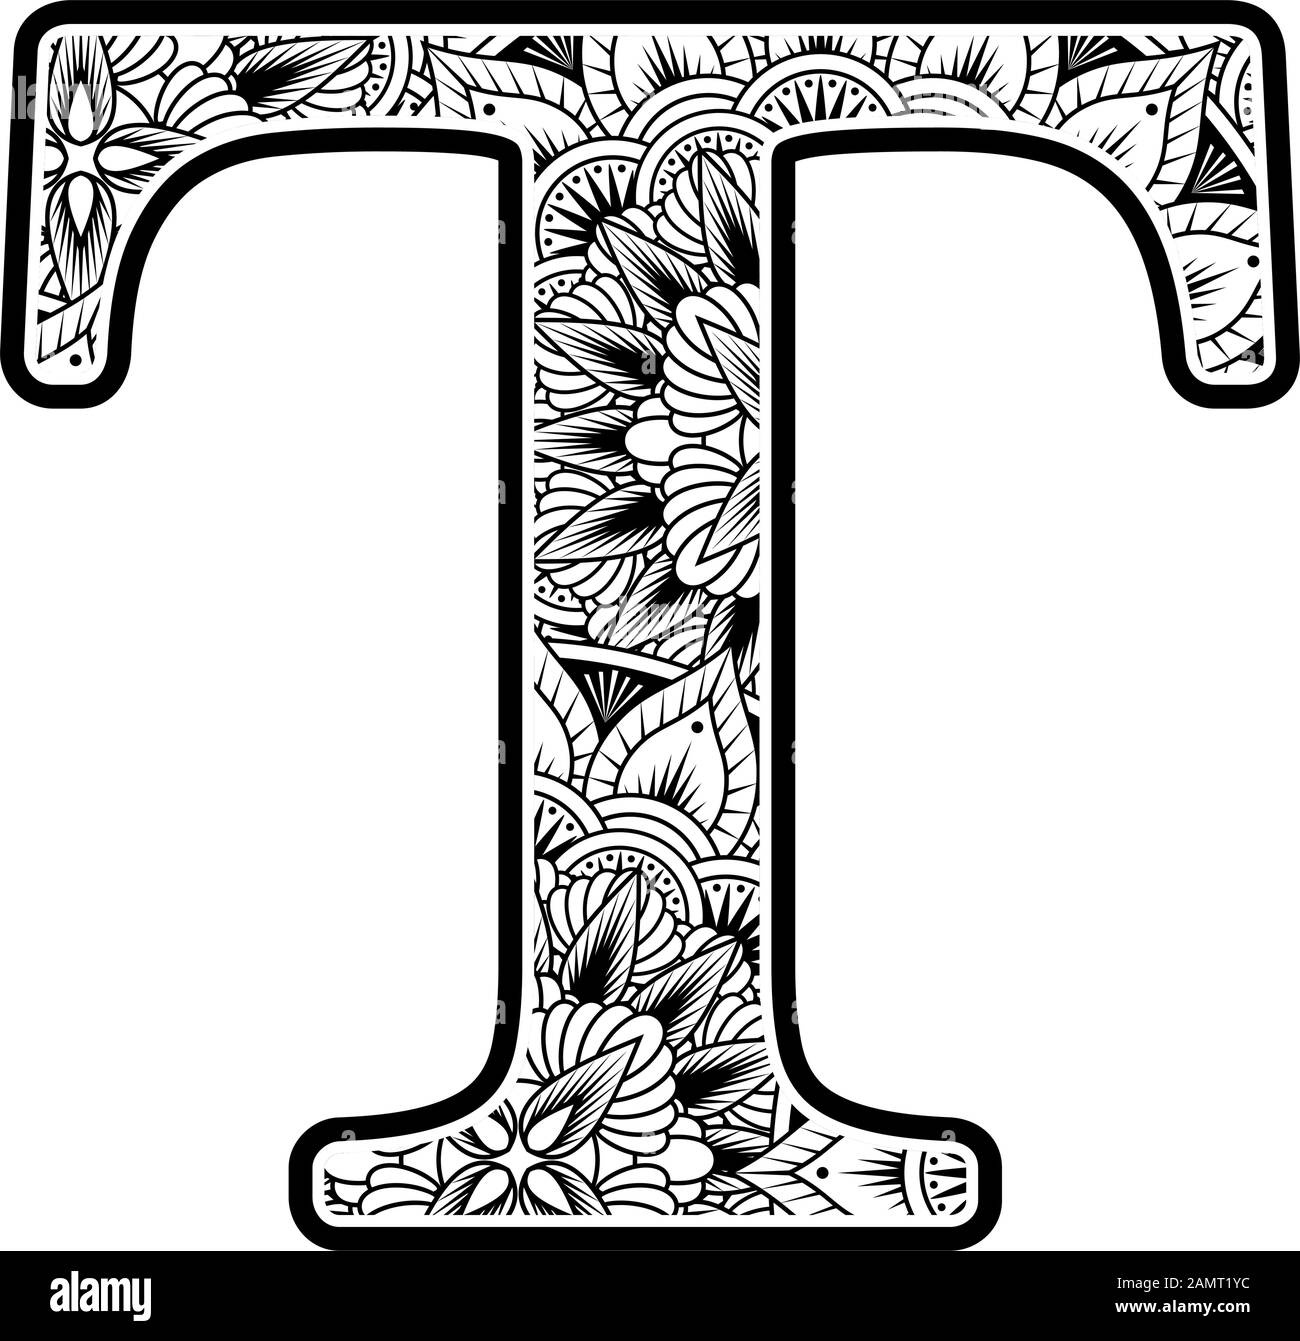 lettre majuscule t avec ornements abstraits de fleurs en noir et blanc. design inspiré du style d'art mandala pour colorier. Isolé sur fond blanc Illustration de Vecteur